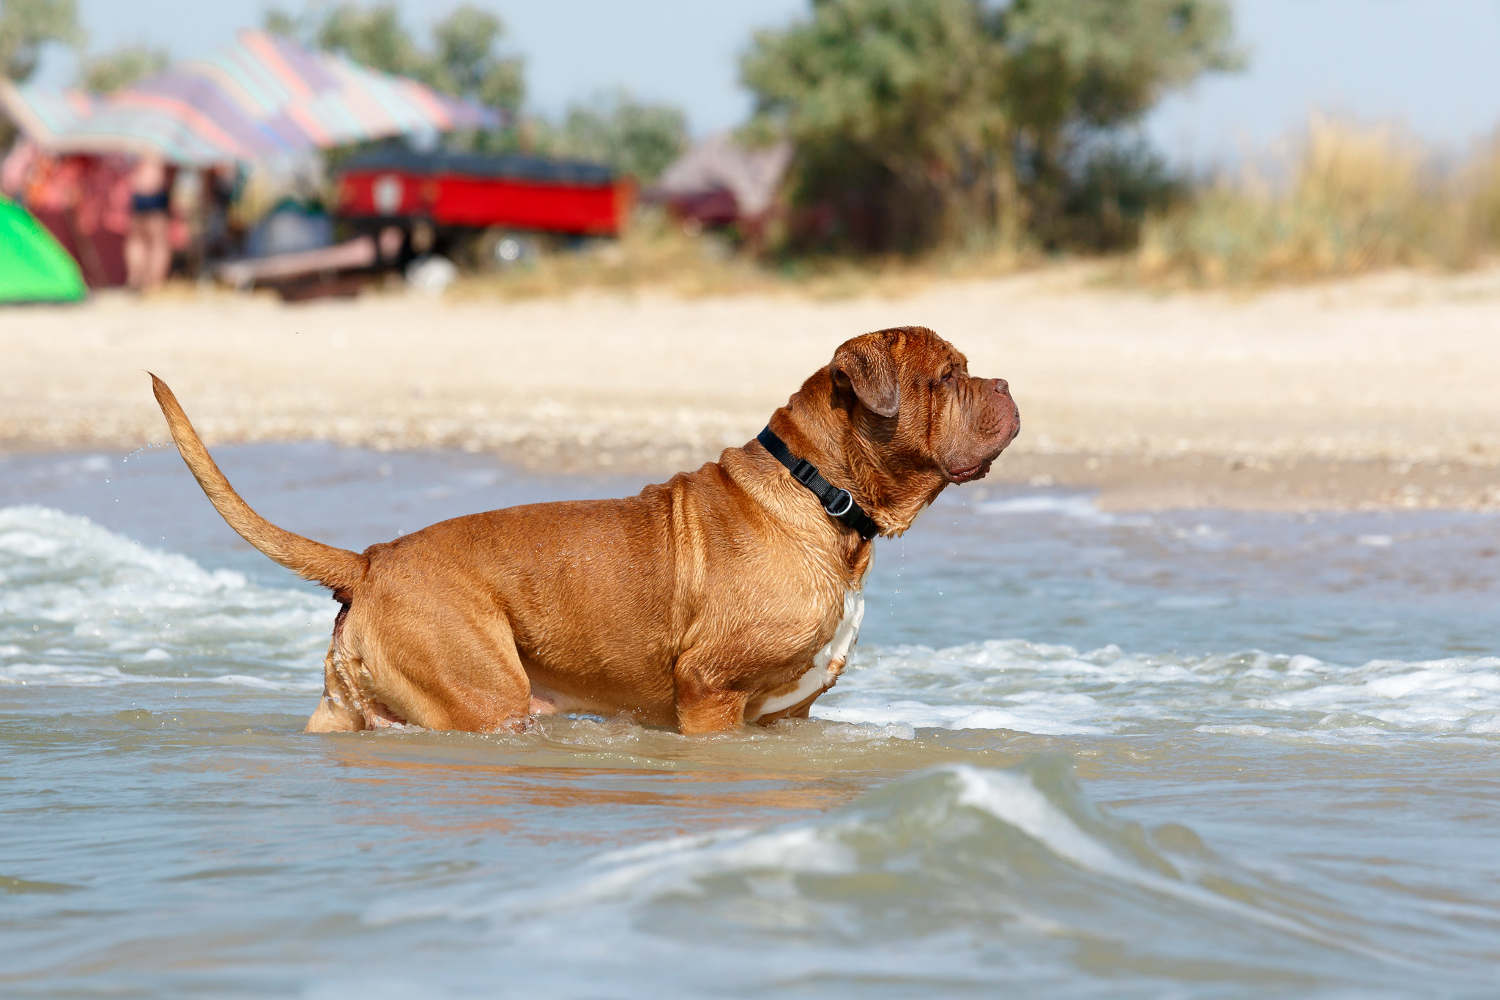 PUGLIA. I cani nelle spiagge non possono entrare, anche se hanno il guinzaglio